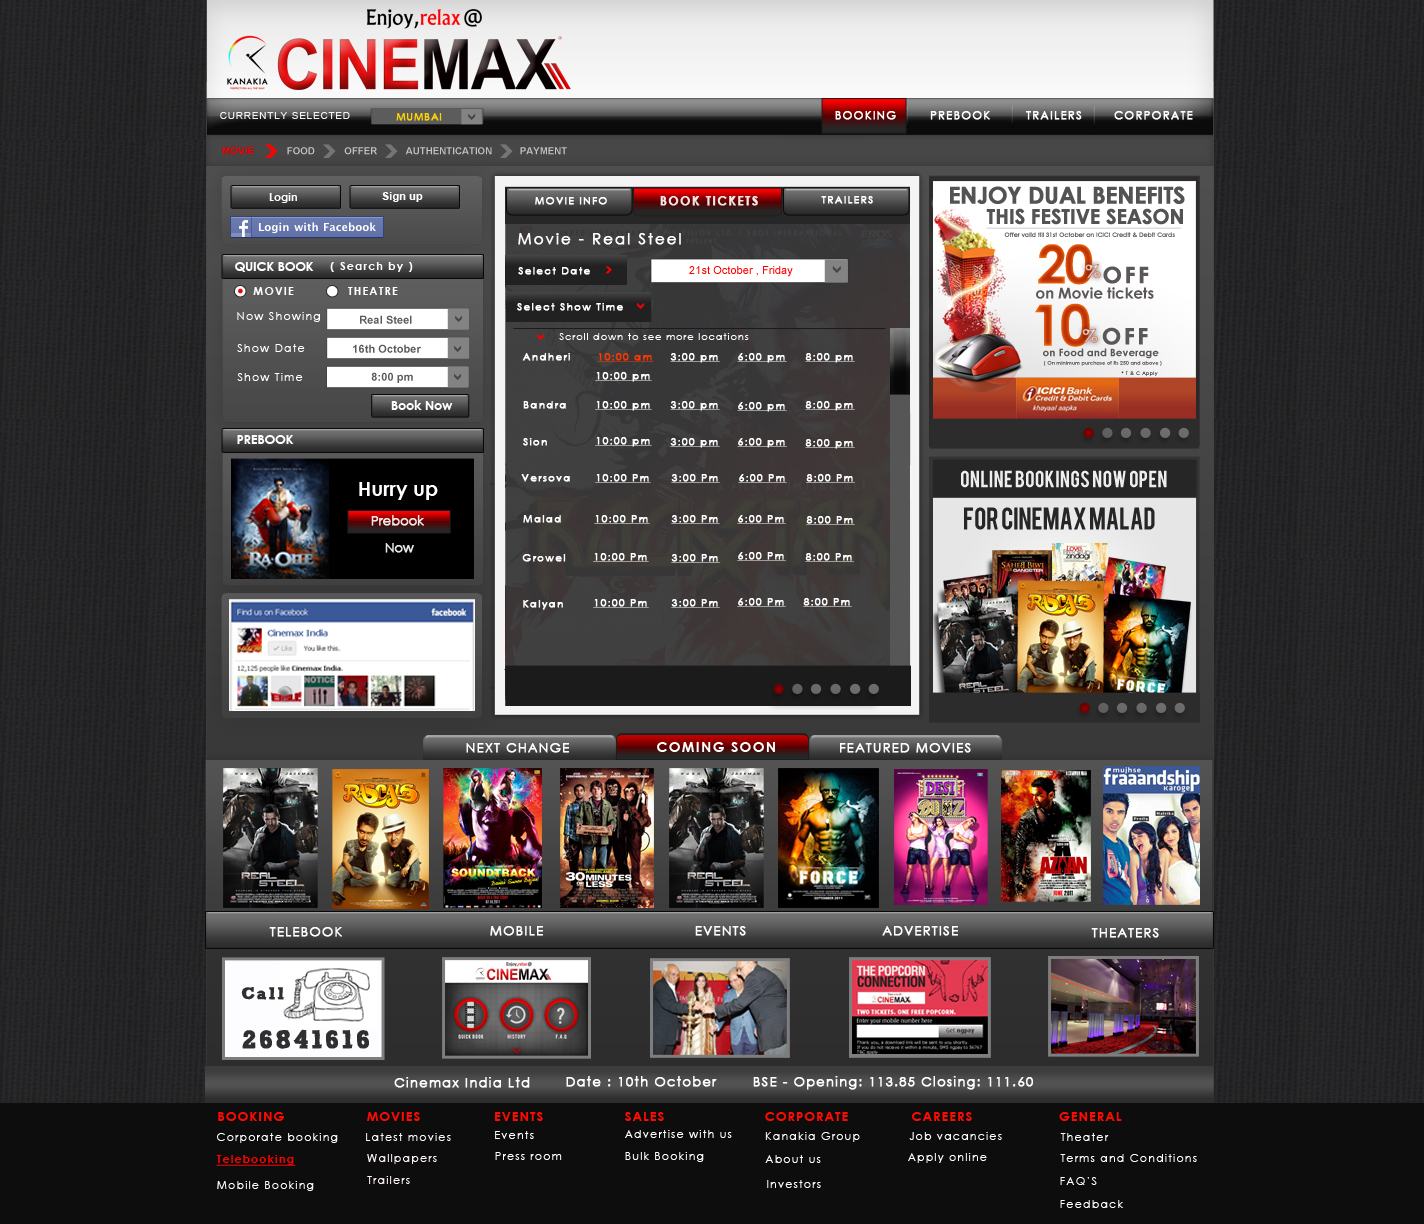 Cinemax 